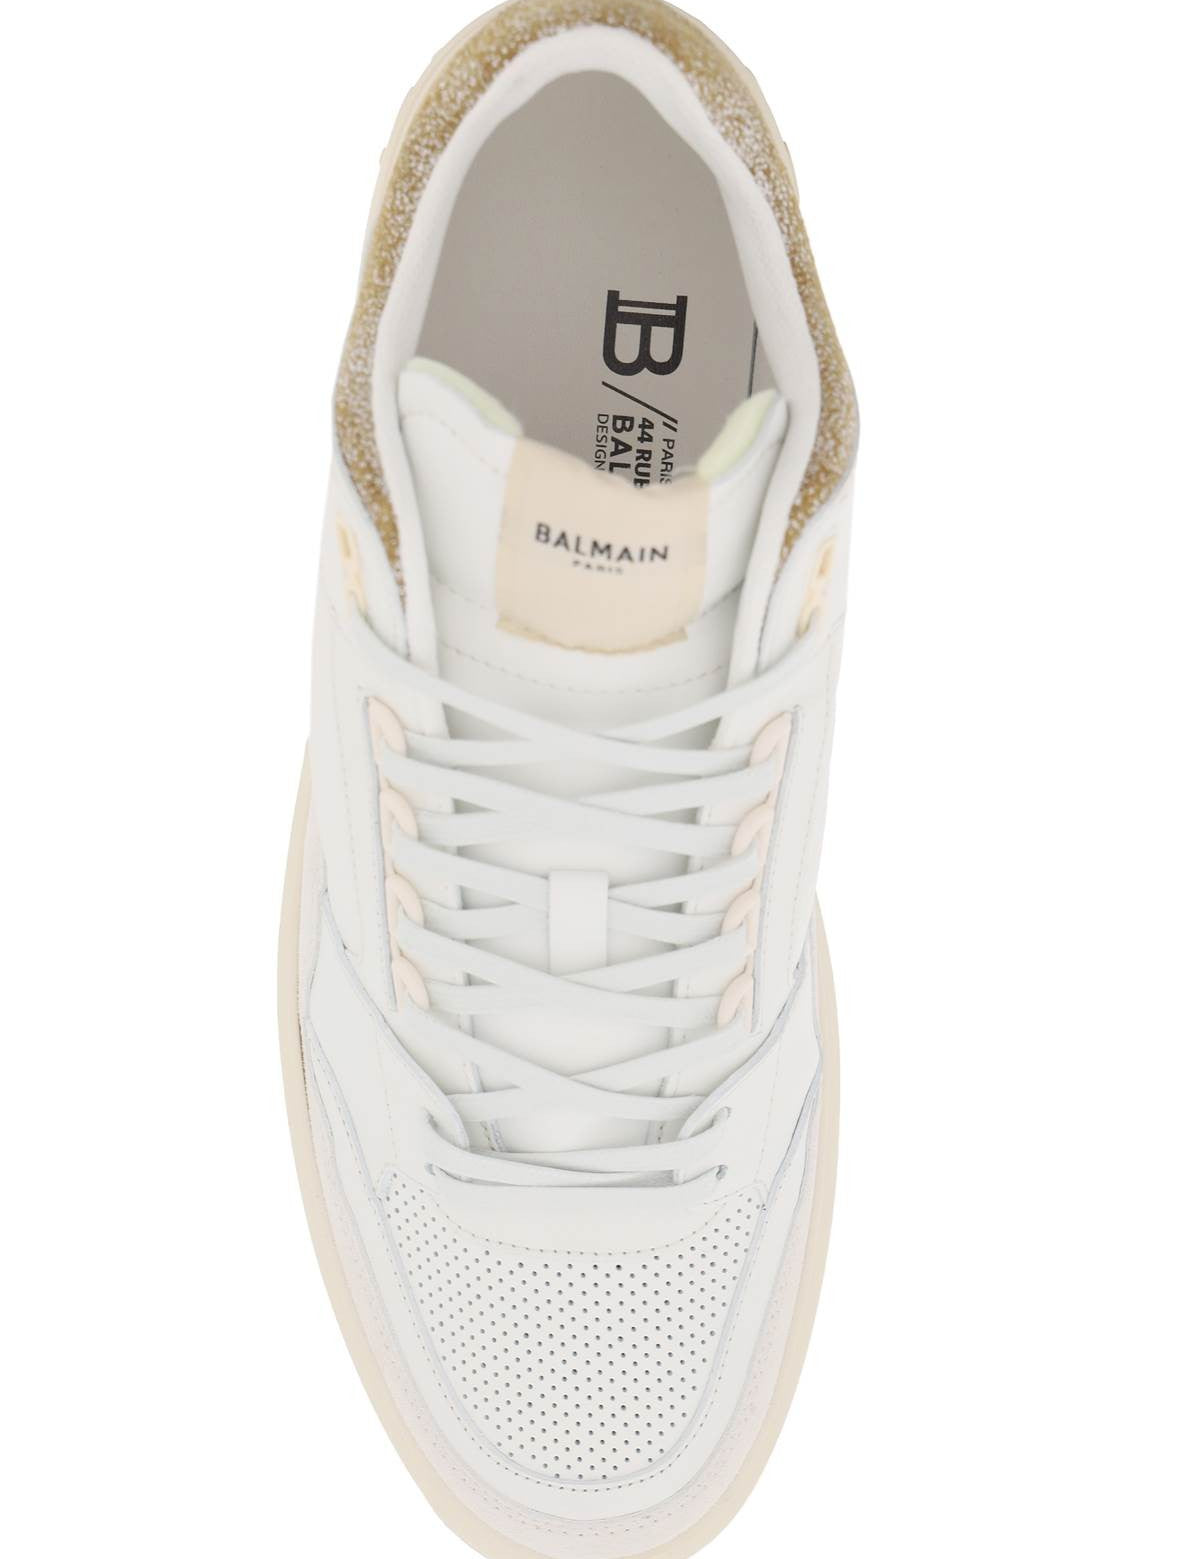 balmain-b-court-mid-top-sneakers_ec6fe1dc-62c7-43a4-be6d-87d3e2321f93.jpg